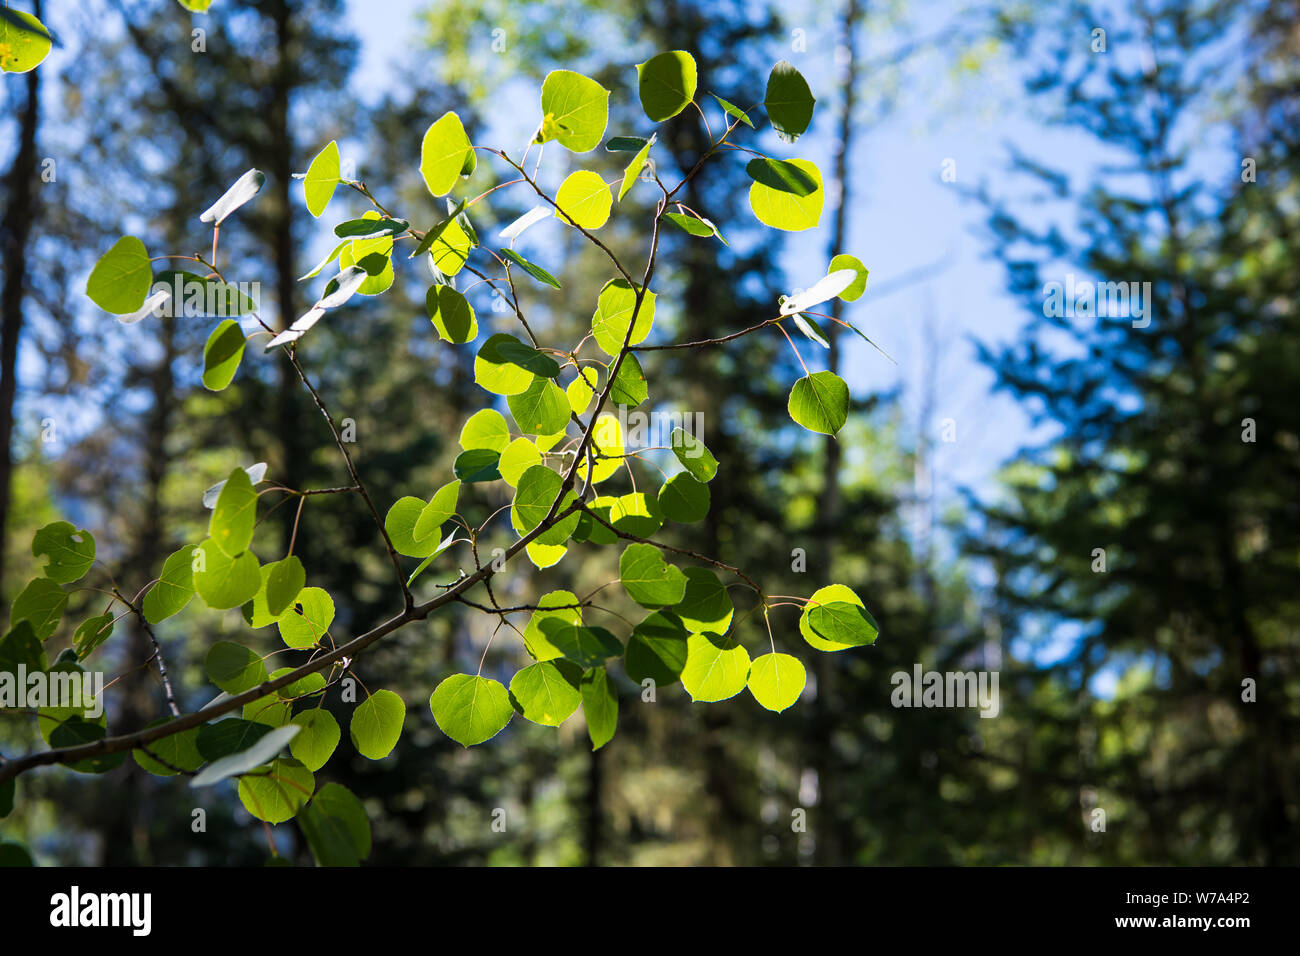 Die grünen Blätter eines Aspen Tree Hintergrundbeleuchtung durch helles Sonnenlicht zeigt eine detaillierte Ansicht der Äste, Zweige und Blätter Venen - in der Nähe von Pagosa Springs, Colorado Stockfoto